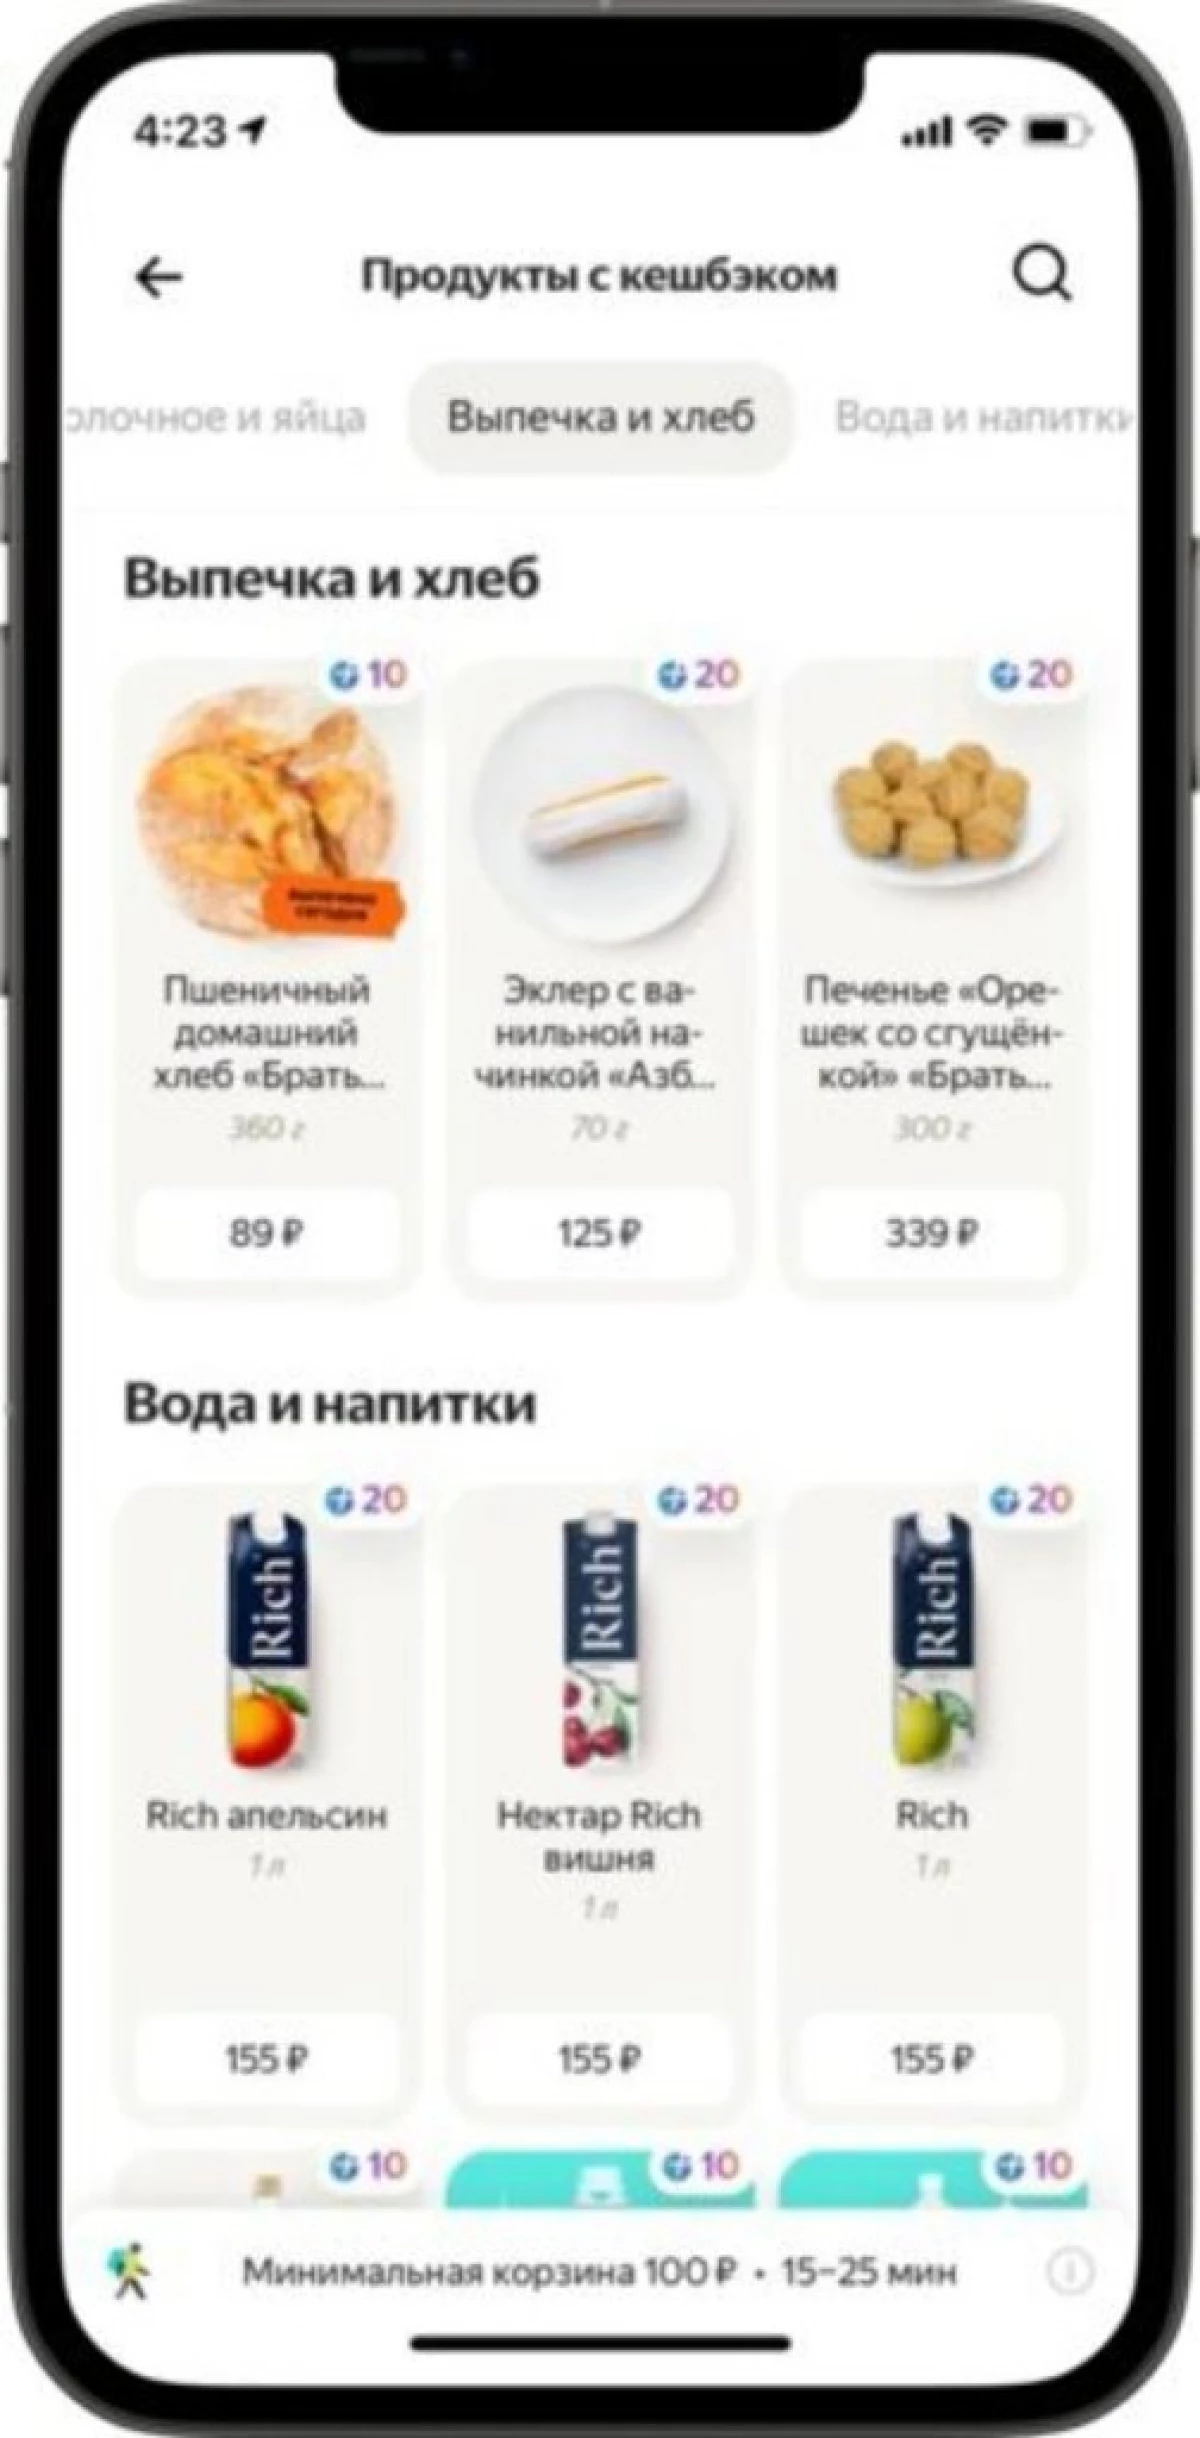 Yandex a permis de recevoir et de dépenser les points 